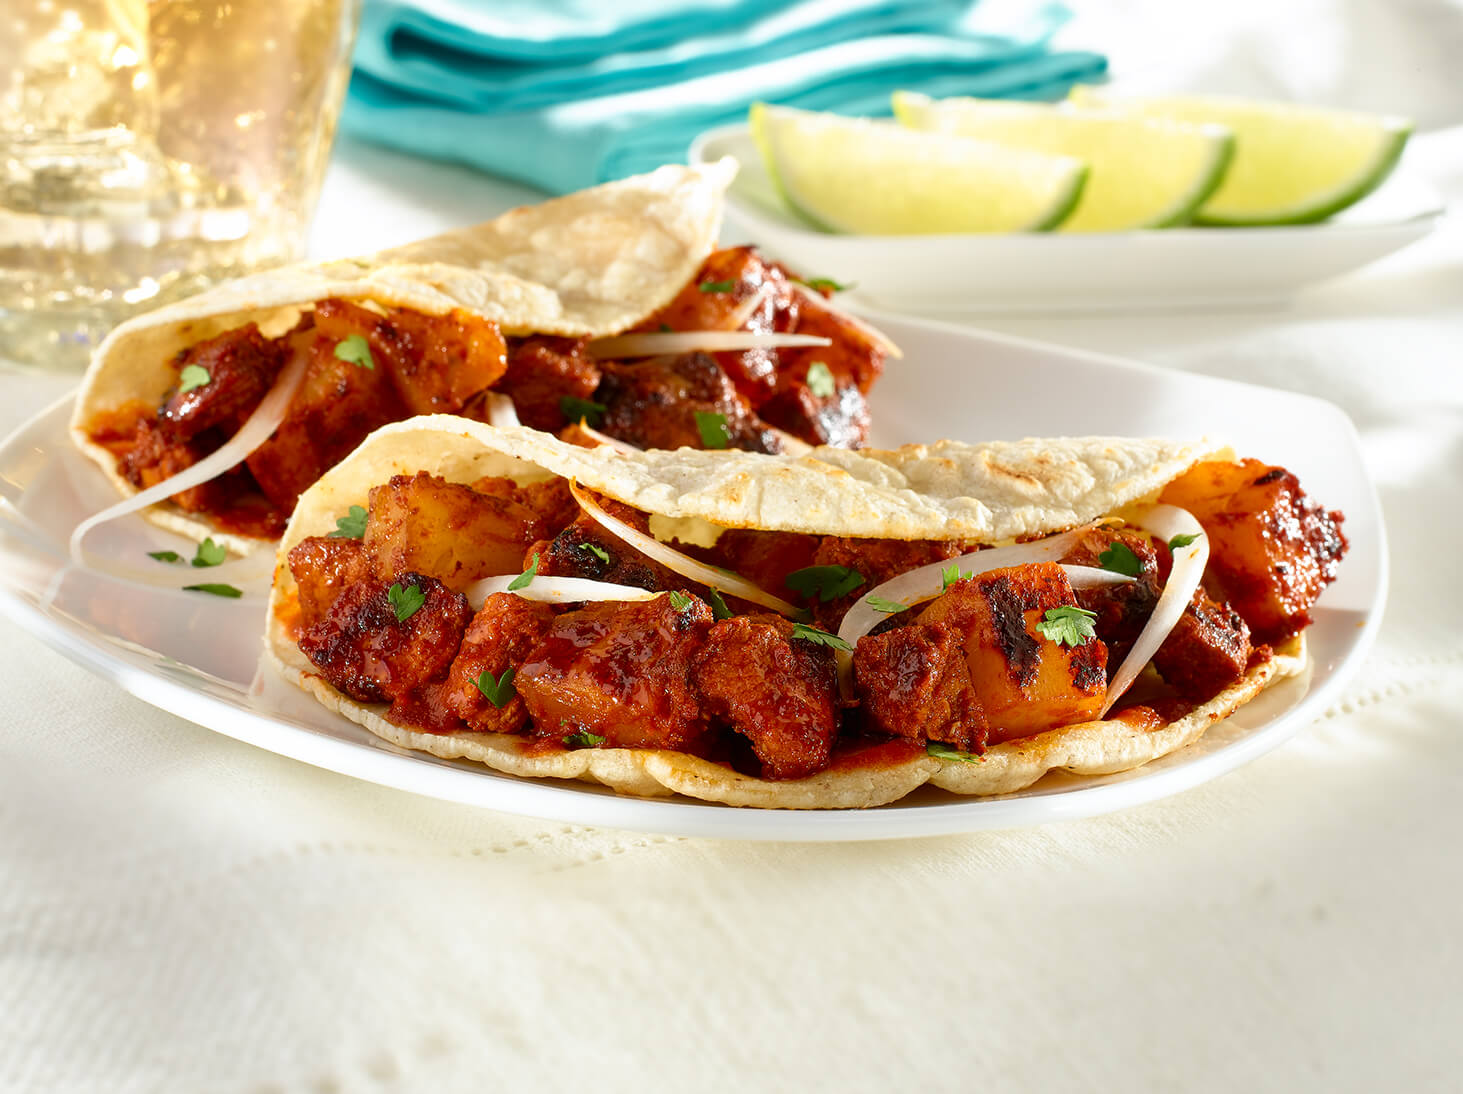 Home-Style Tacos al Pastor – Pork Tacos